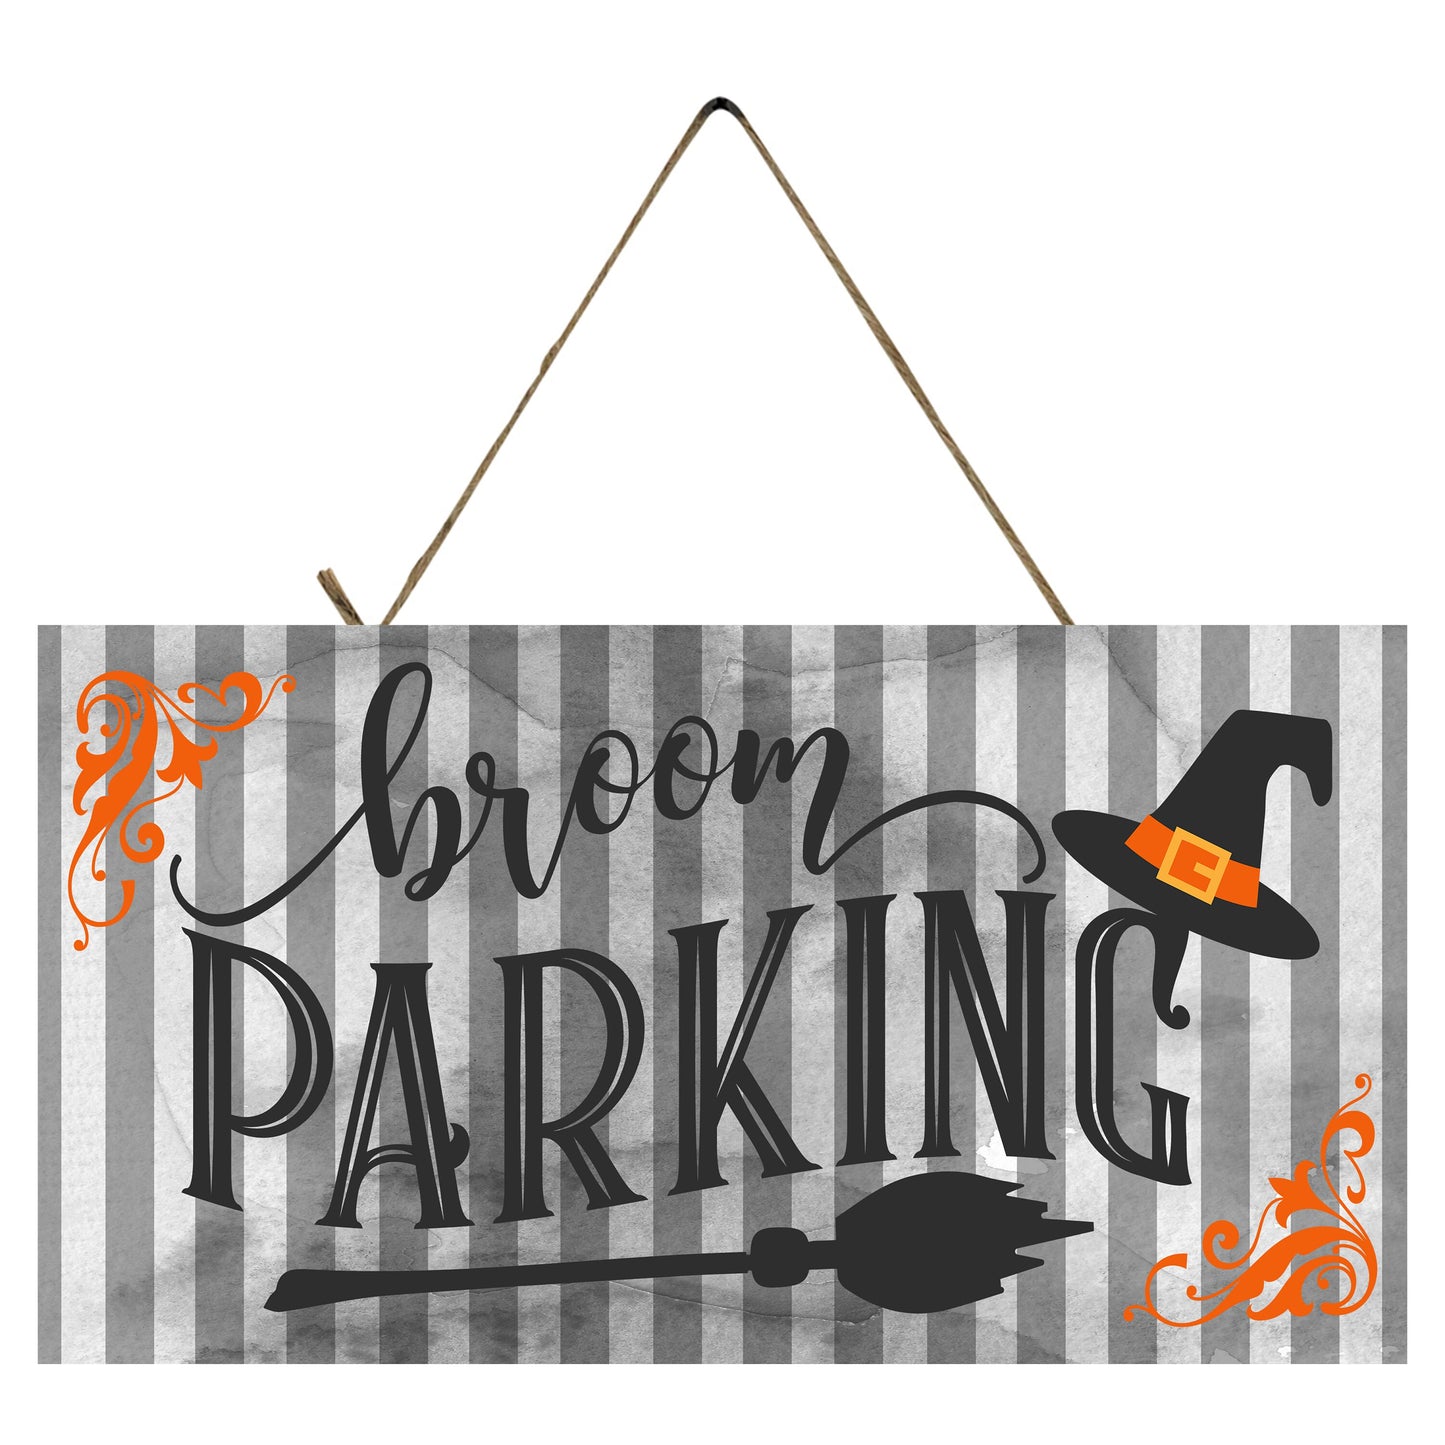 Broom Parking Halloween impreso hecho a mano letrero de madera